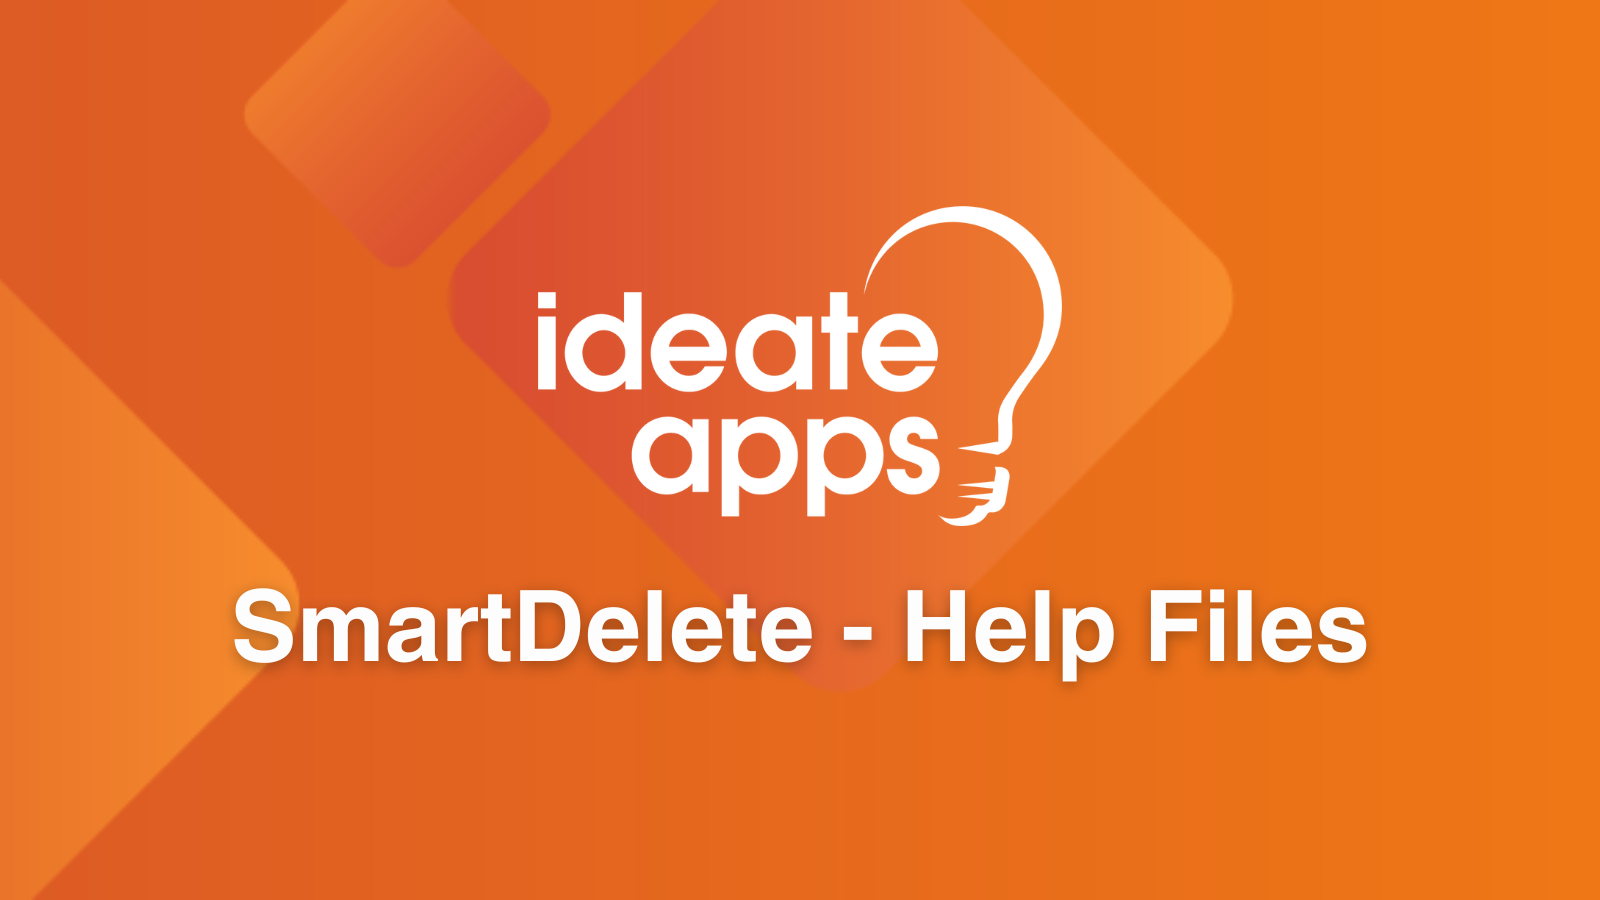 Search IdeateApps SmartDelete Help Files